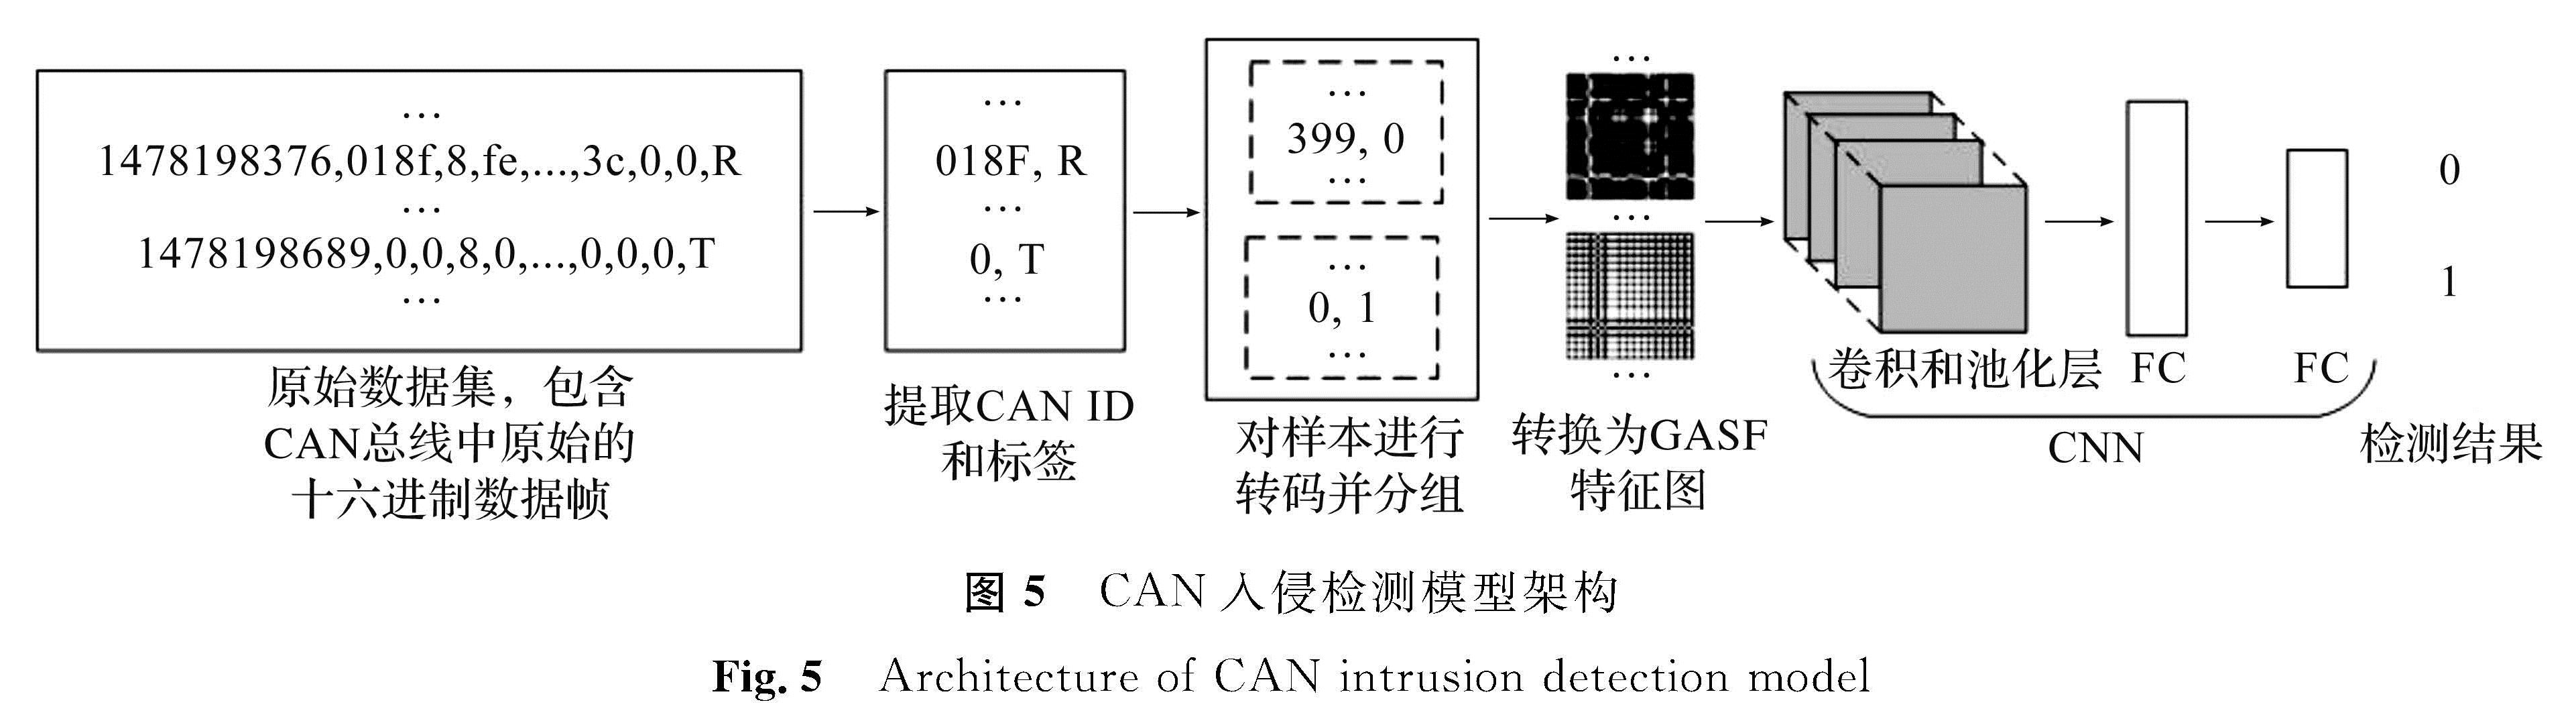 图5 CAN入侵检测模型架构<br/>Fig.5 Architecture of CAN intrusion detection model